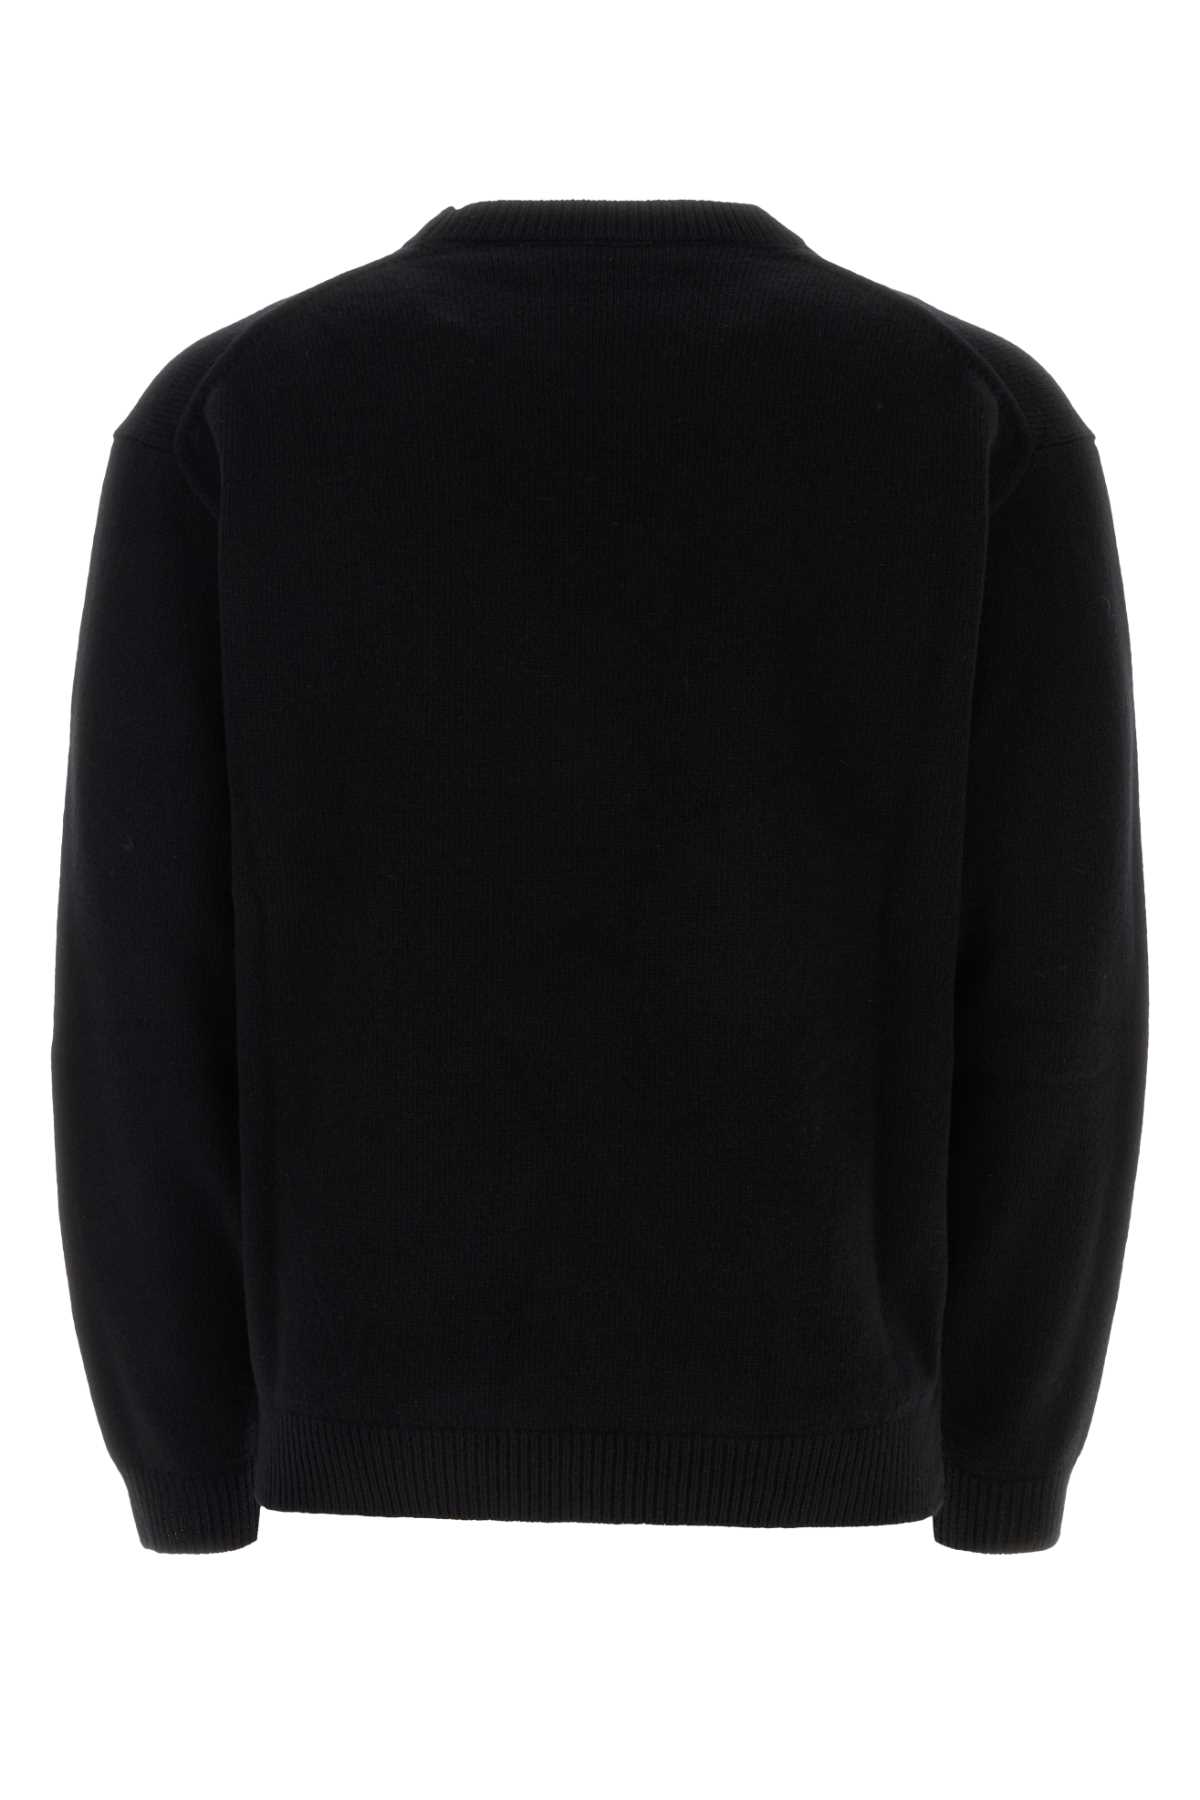 Kenzo Black Wool Oversize Sweater In 99j